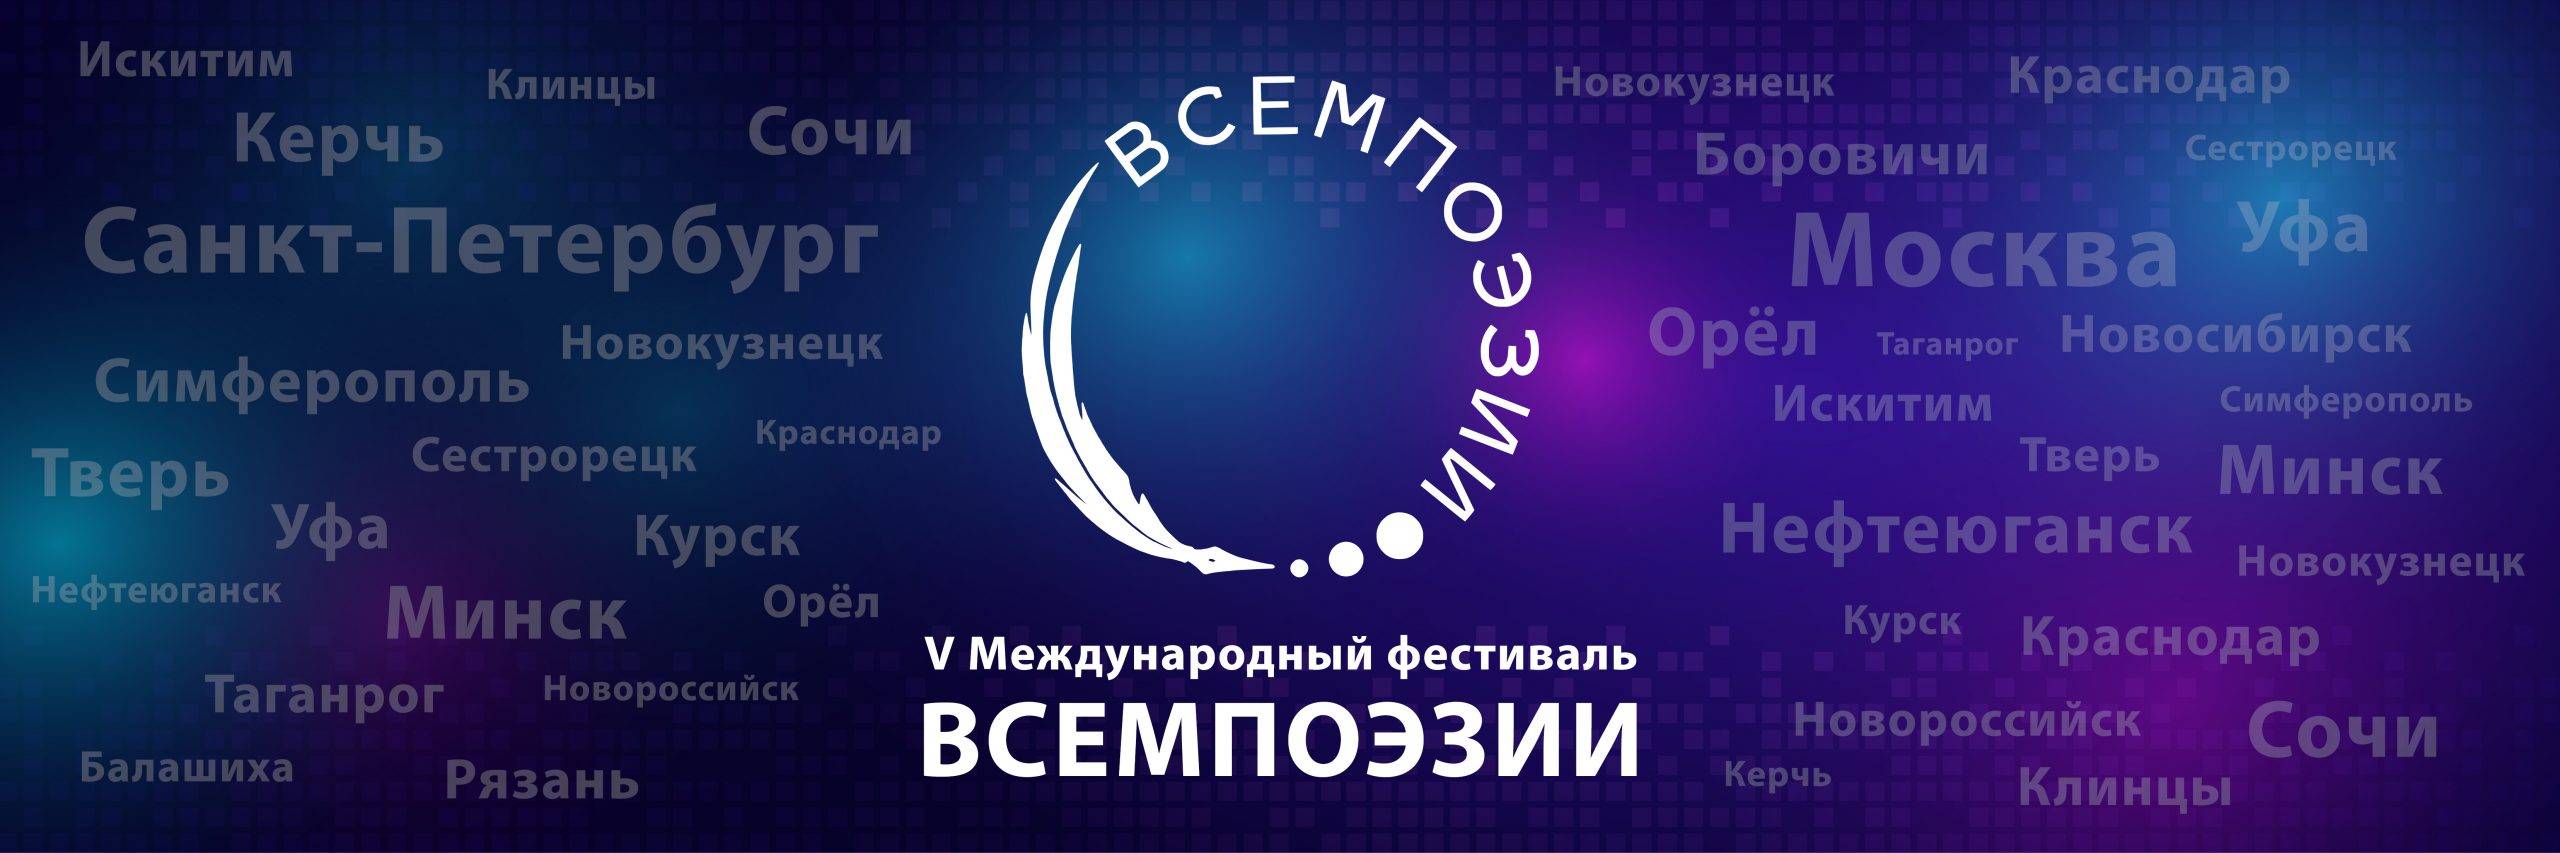 Пятый международный фестиваль «Всемпоэзии» пройдет в Москве